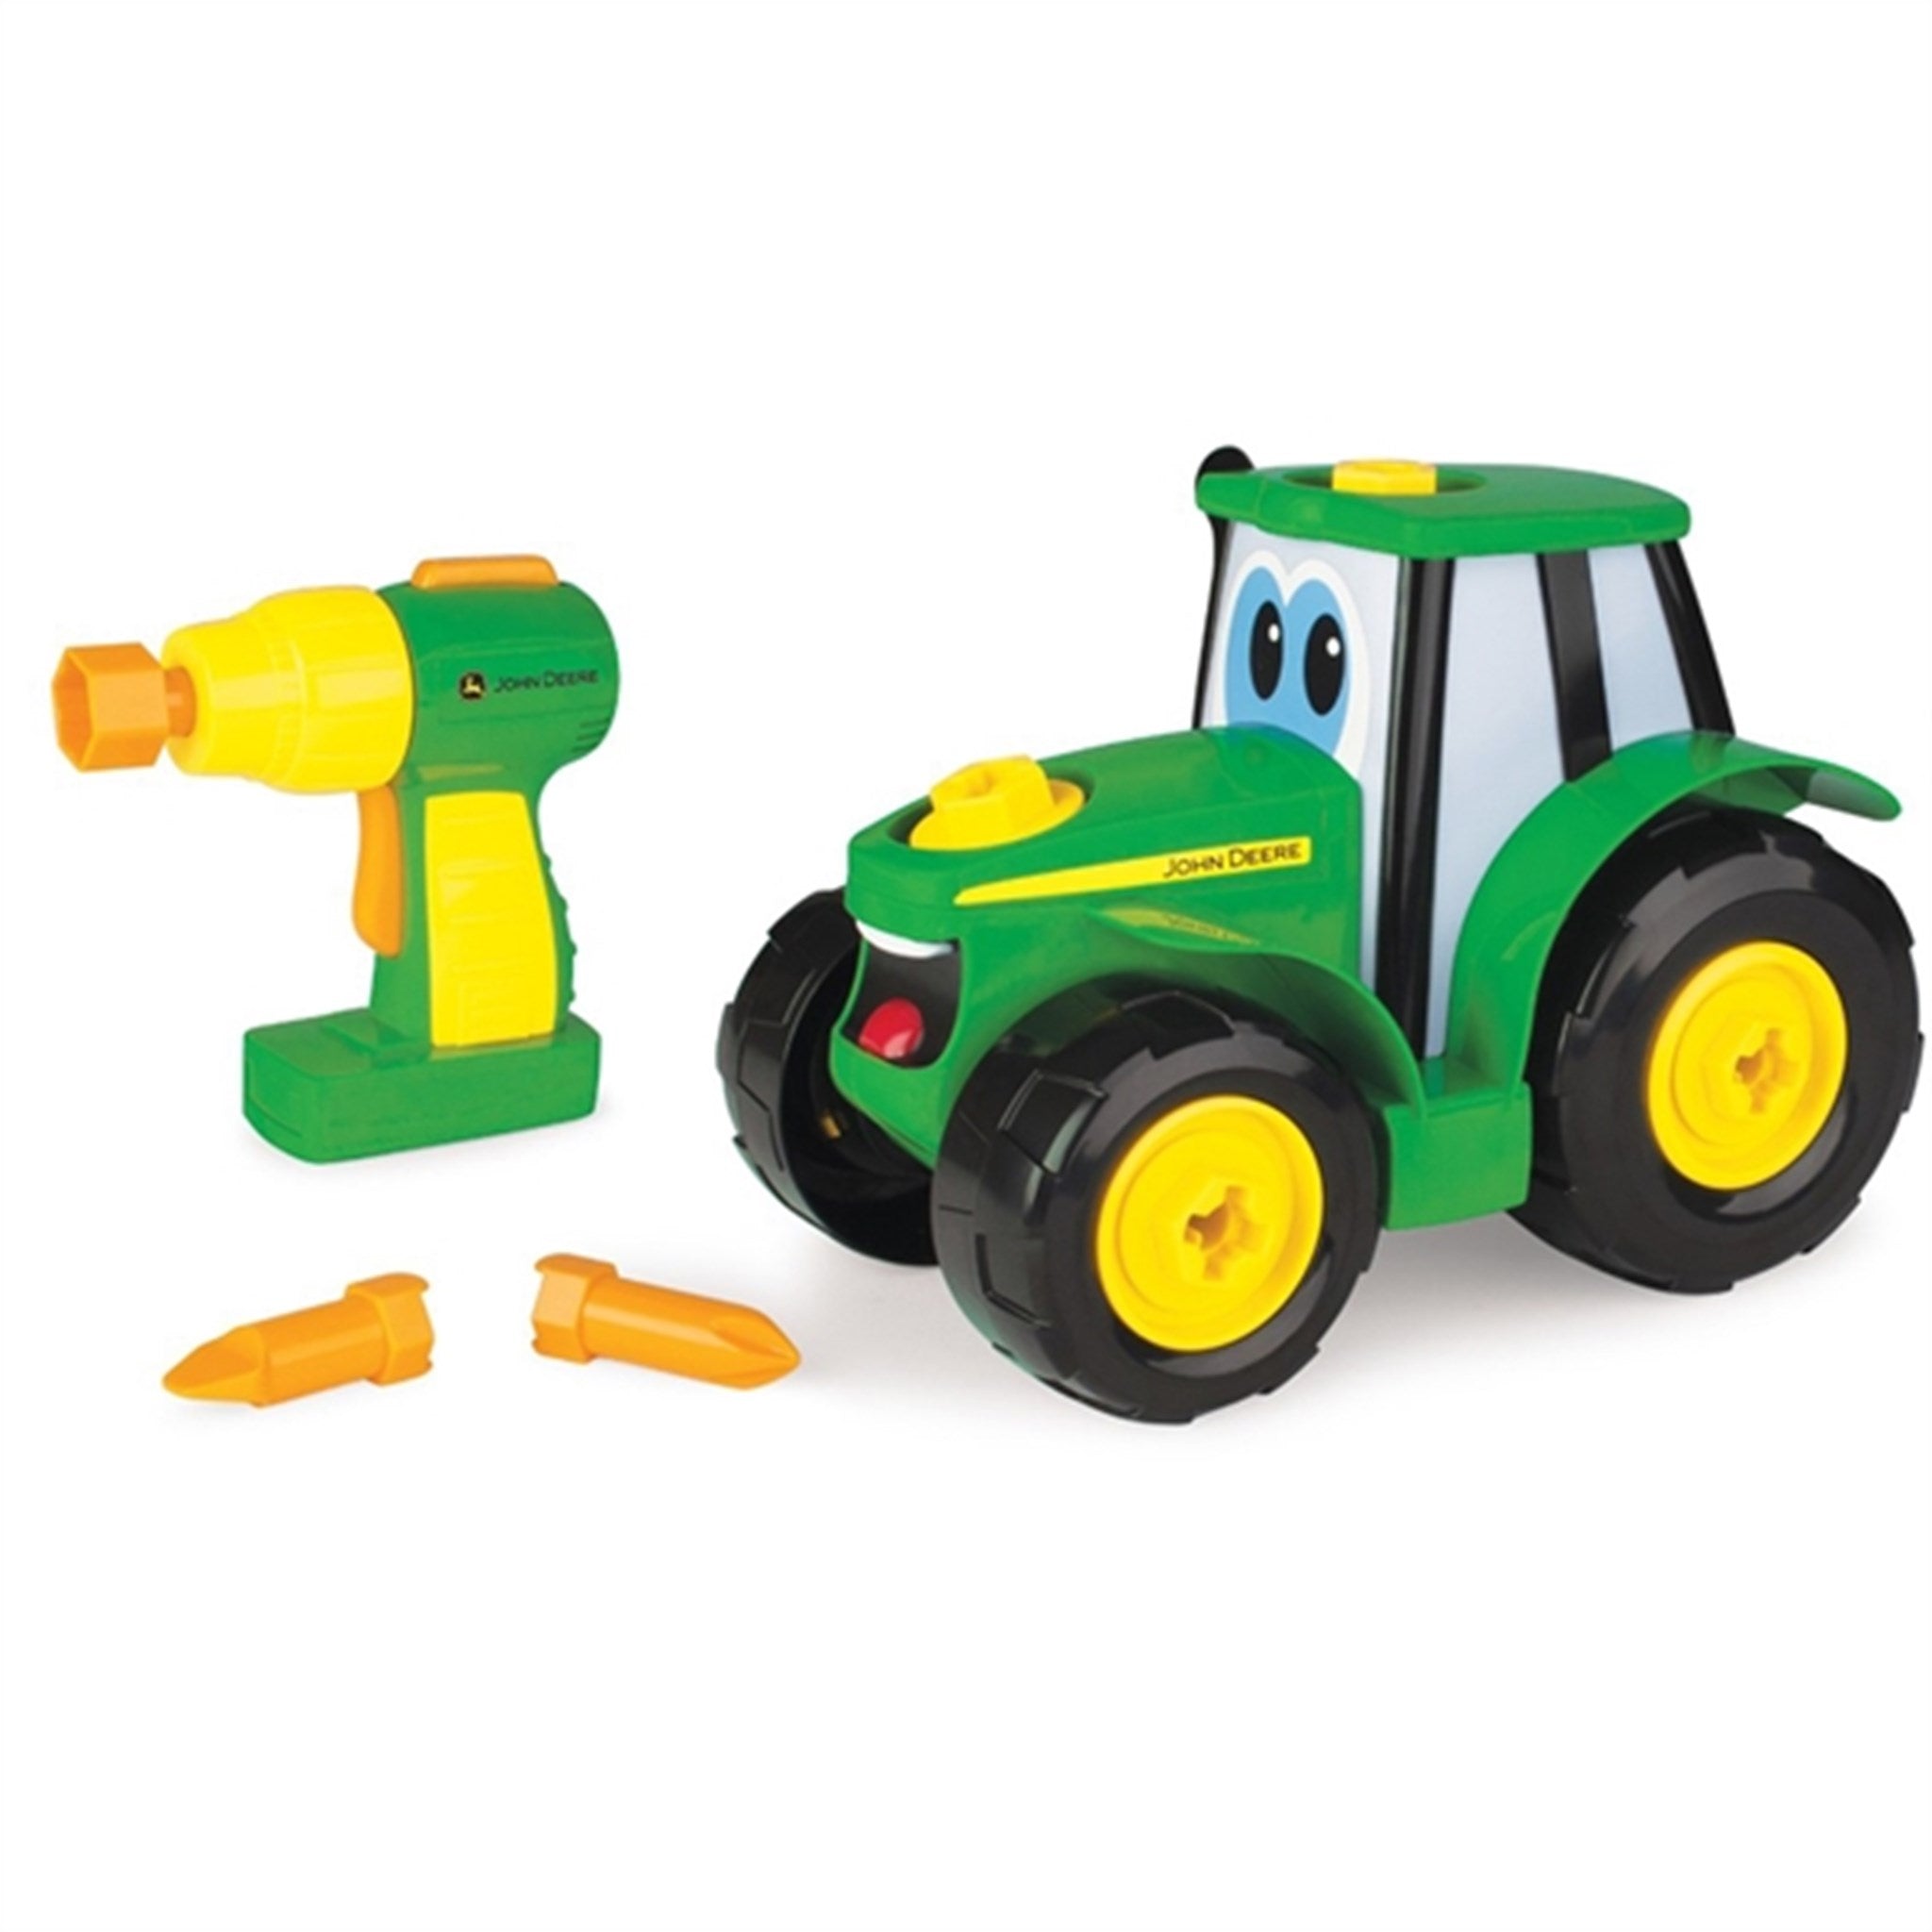 John Deere Johnny Traktor Byg en traktor